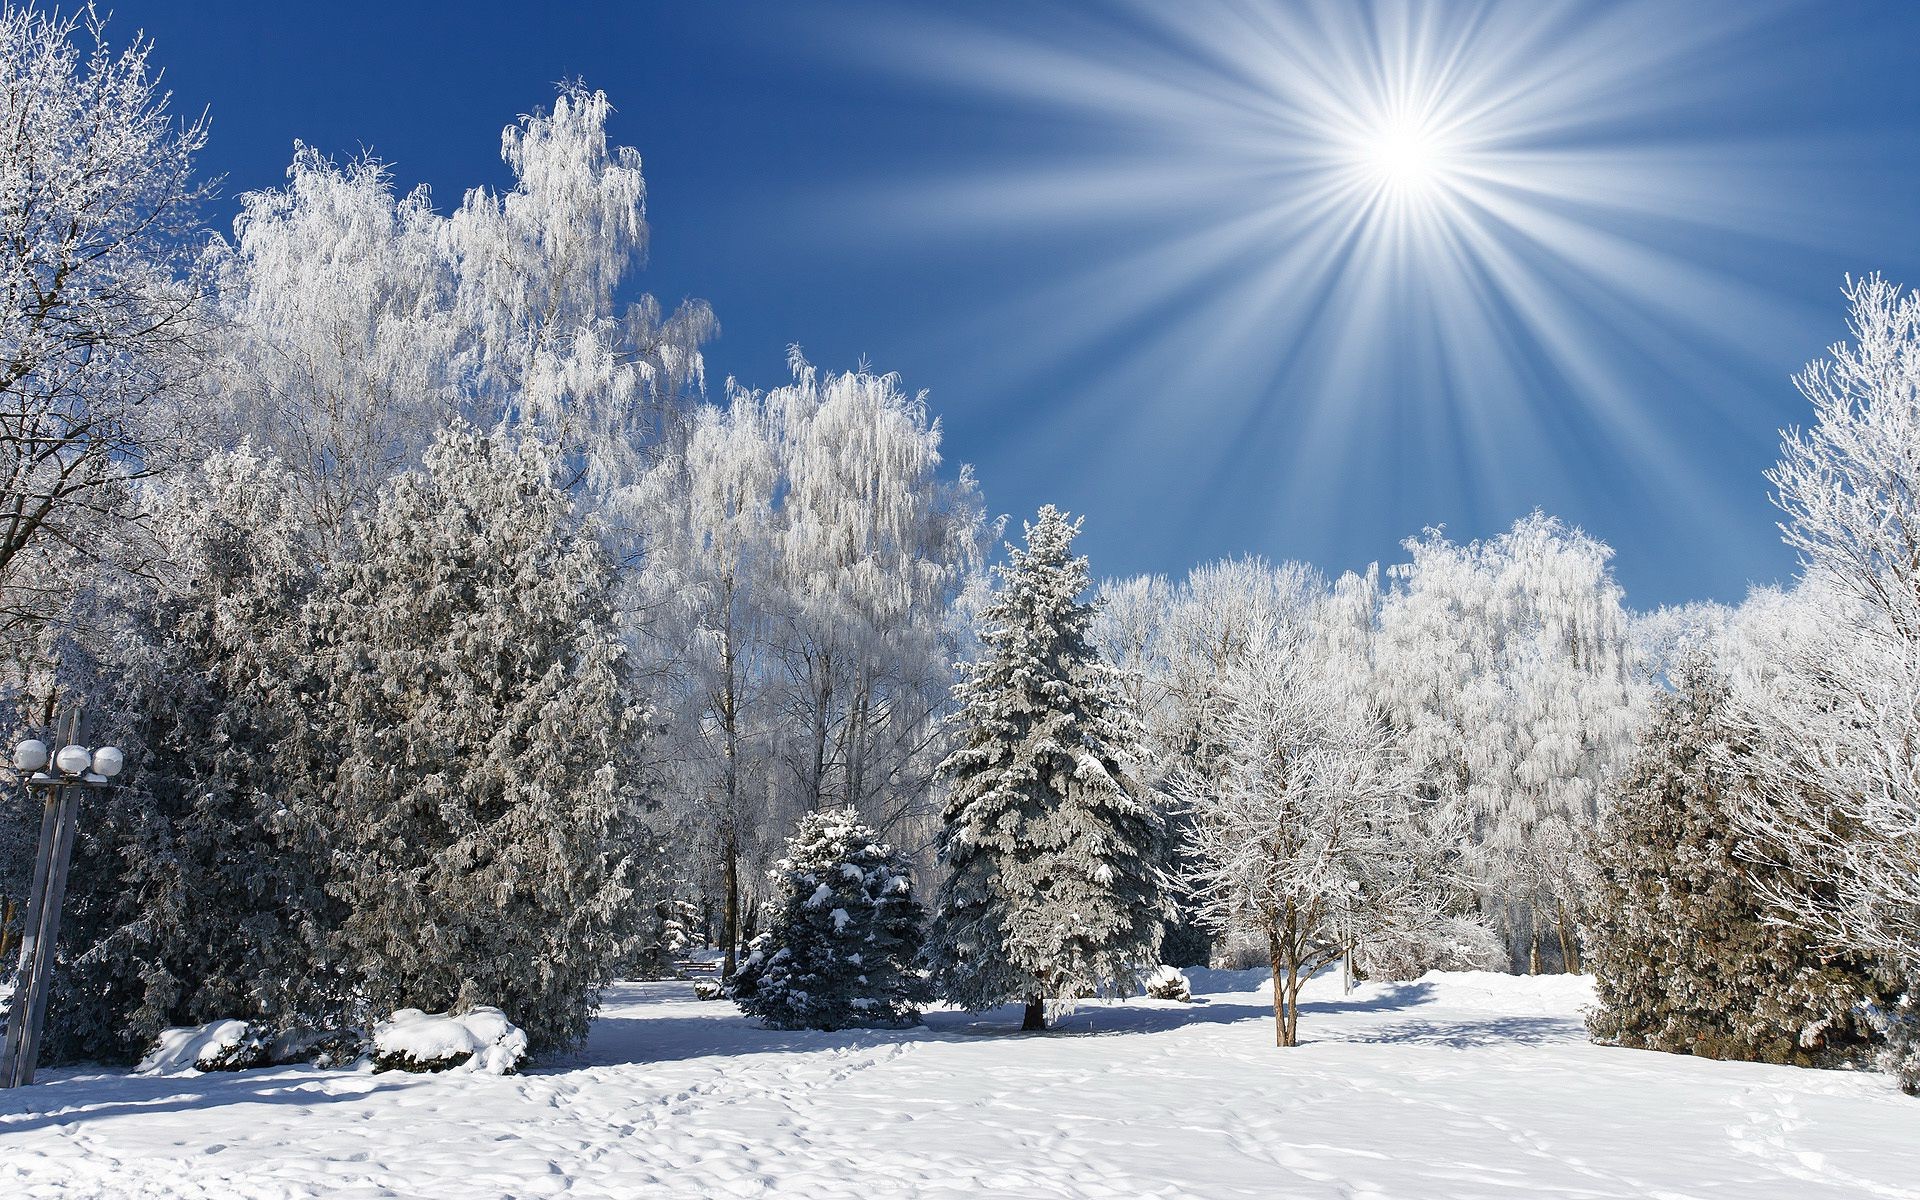 зима снег мороз холодная замороженные лед погода сезон древесины рождество дерево хорошую погоду пургу снег-белый морозный пейзаж снежное яркий